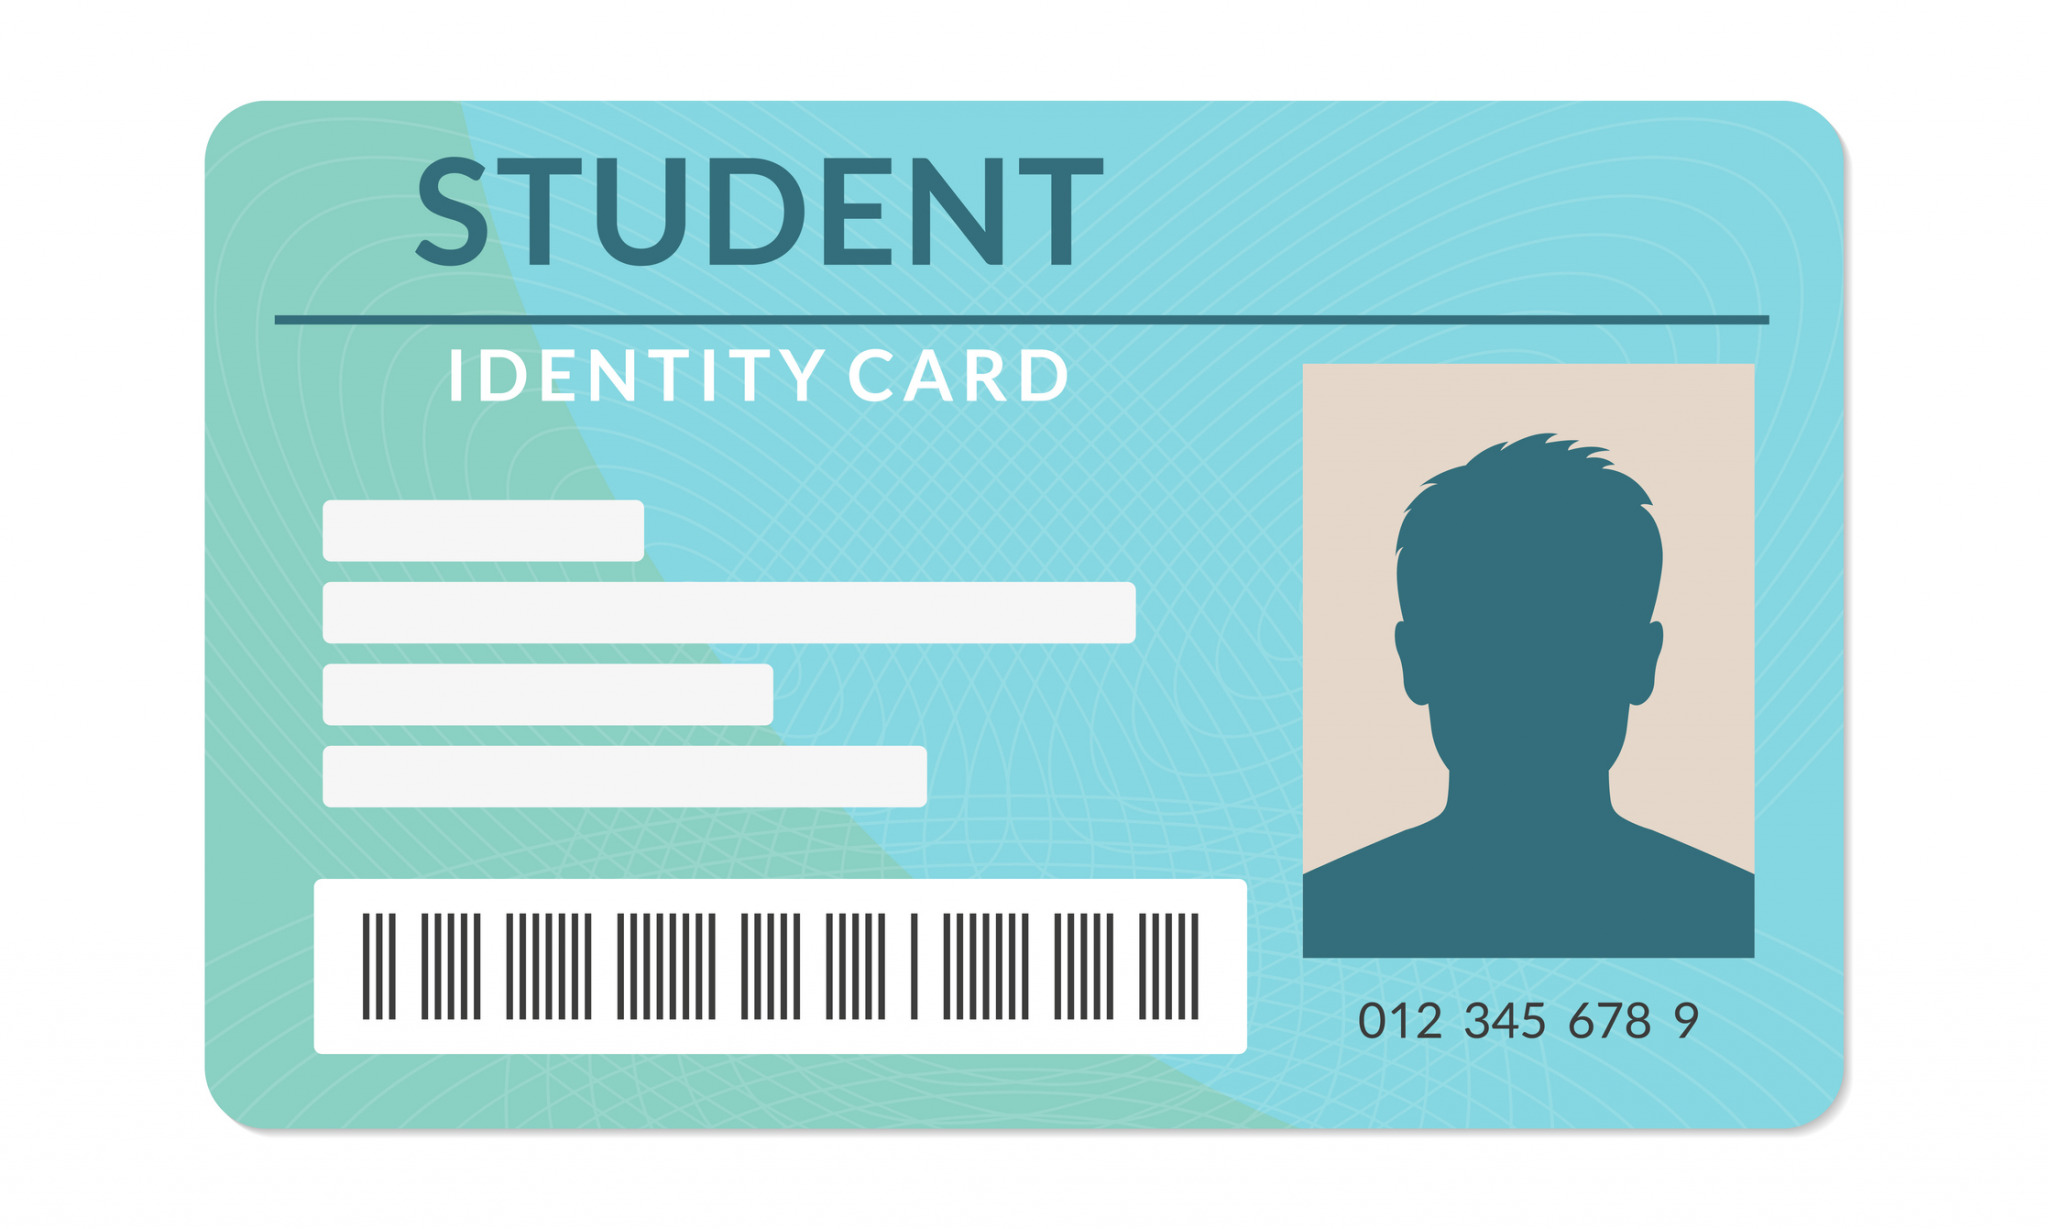 Students card 1. Student Identity Card. Студенческая ID карта. Карточка удостоверения личности.